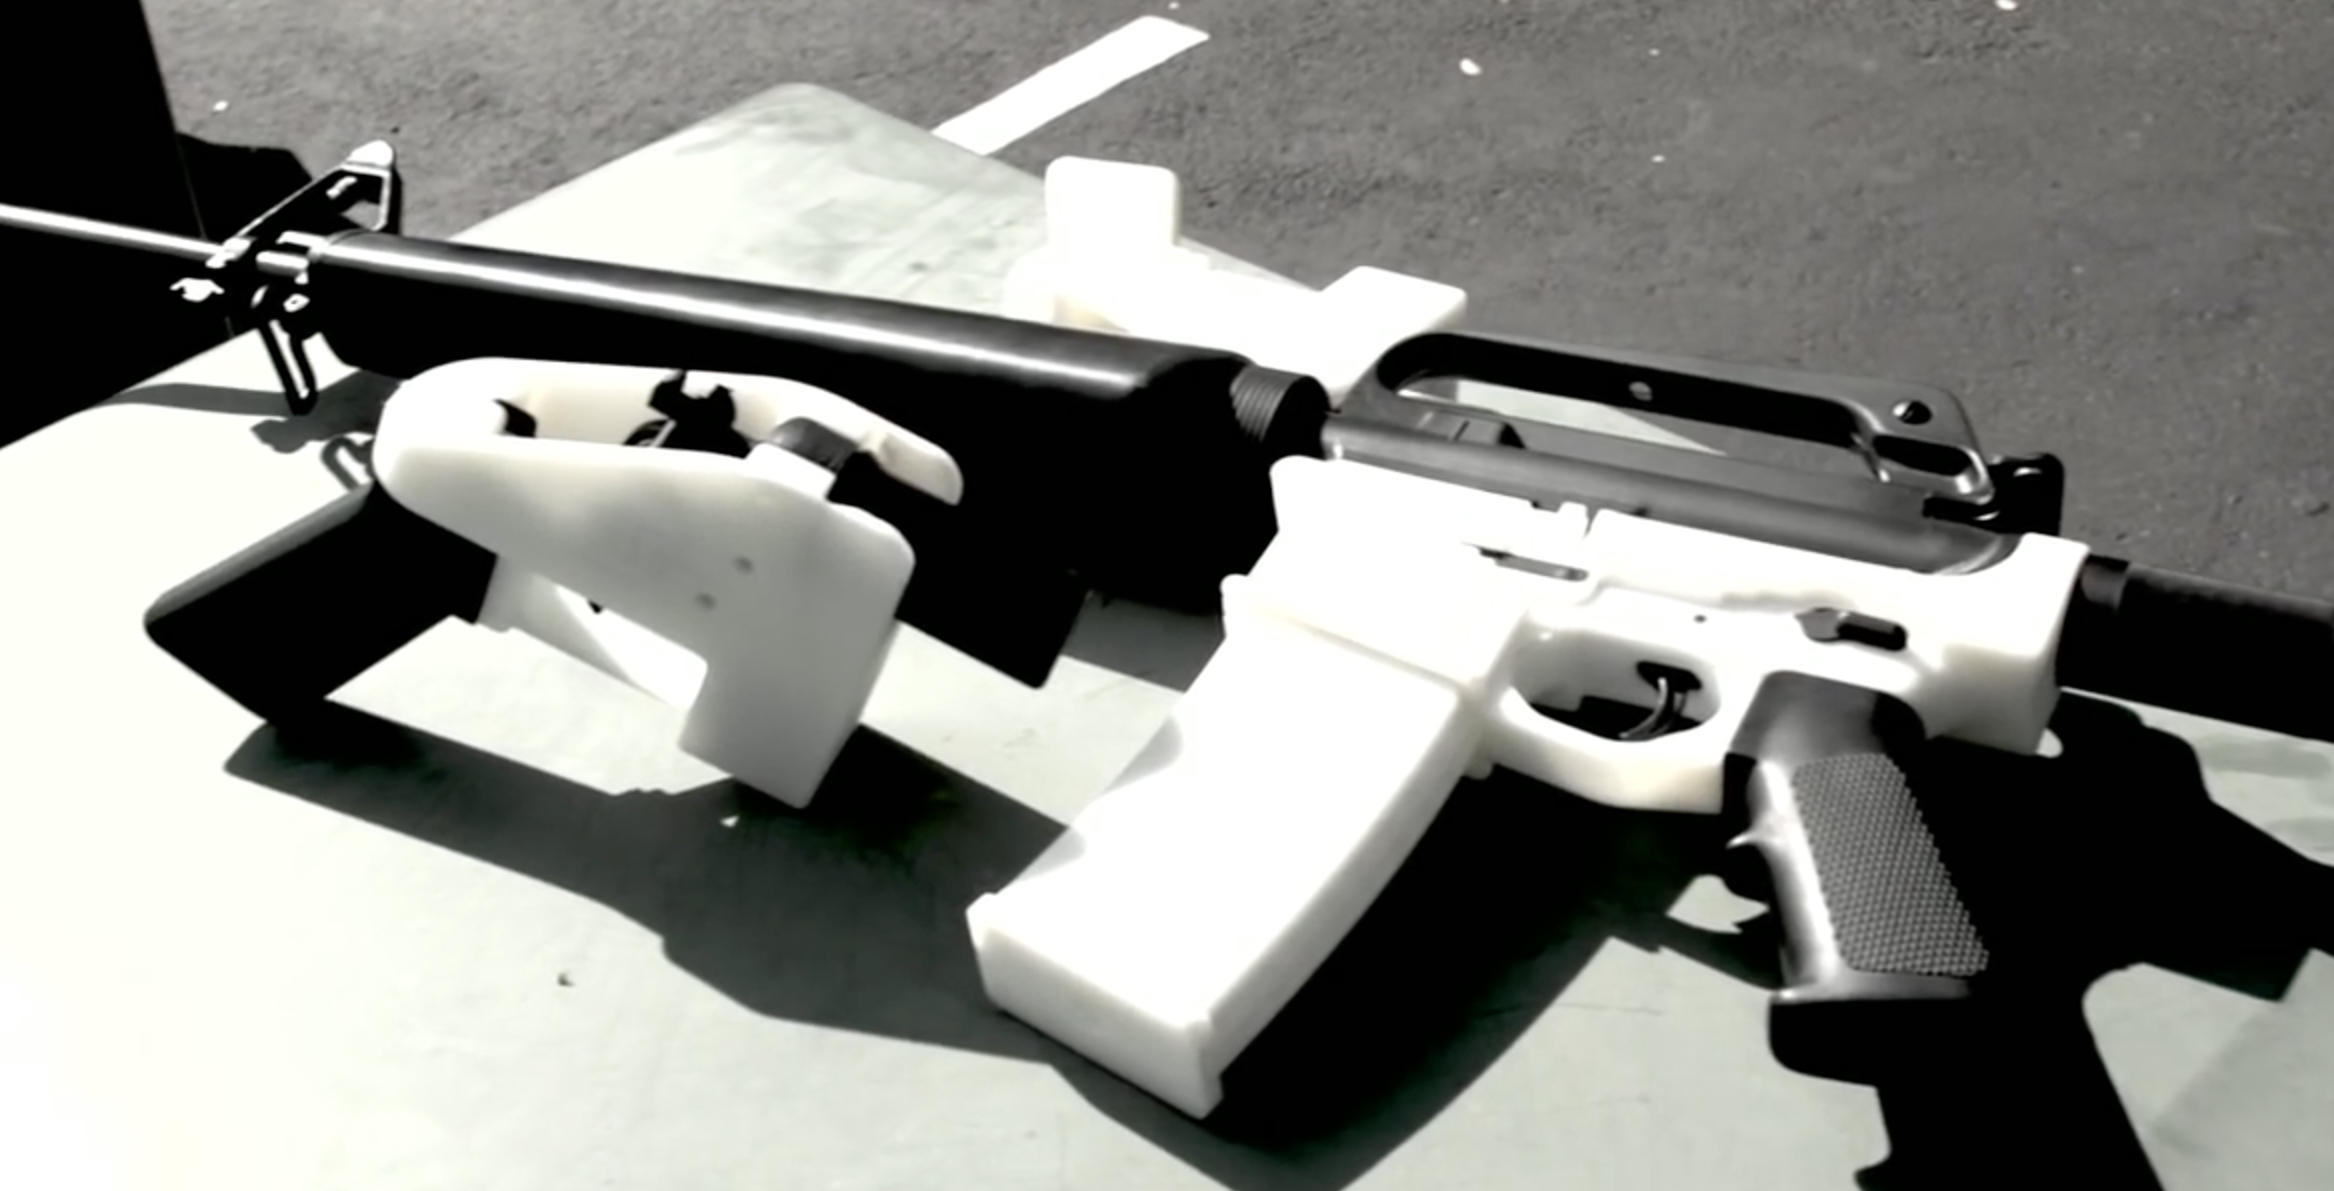 http://crimeresearch.org/wp-content/uploads/2015/05/3D-Printed-Guns.jpeg